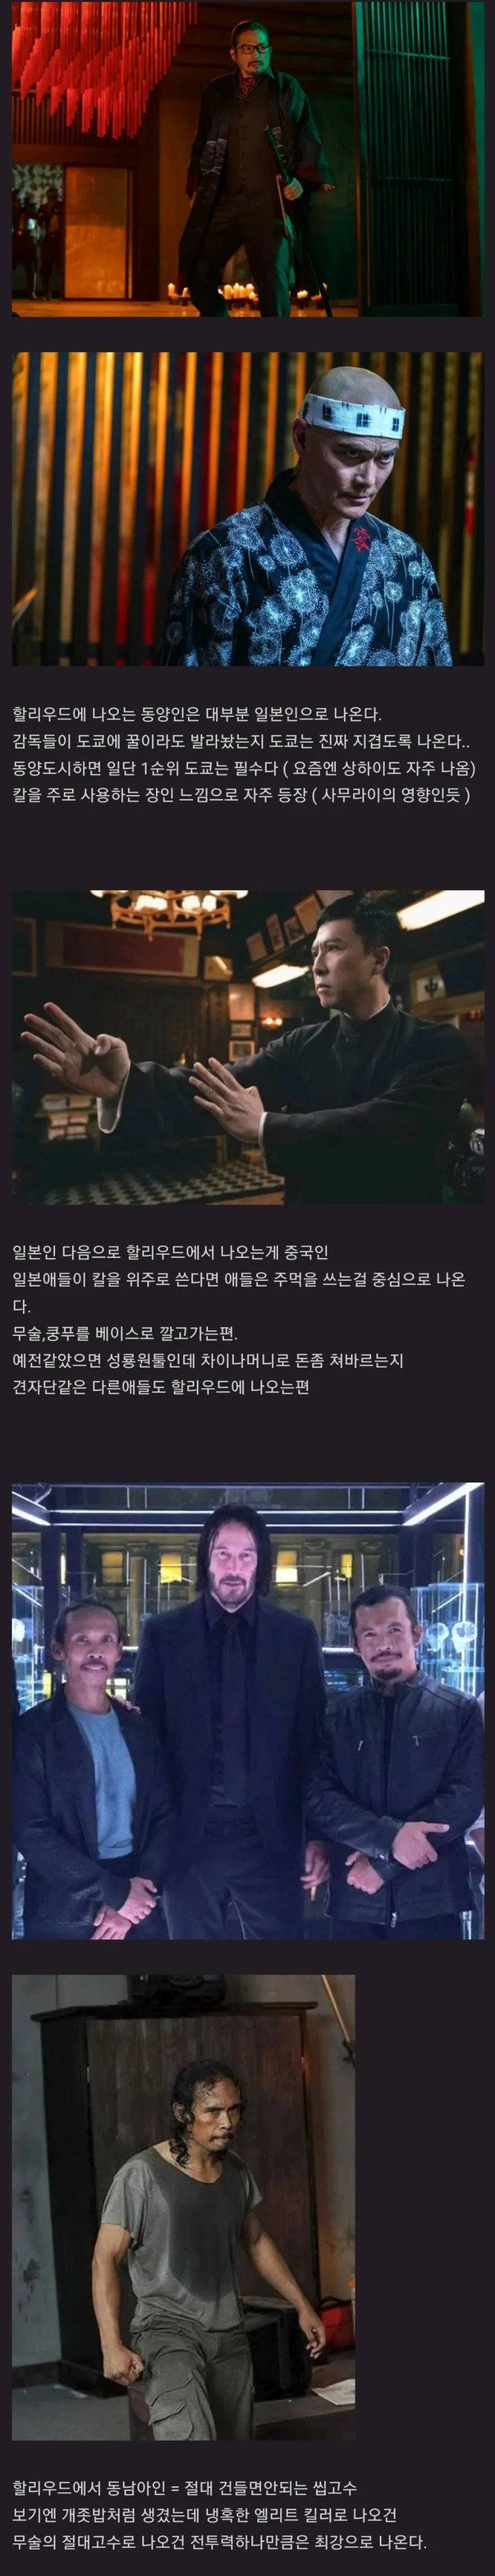 6 할리우드 동양인 클리셰 한국인 - 해커.jpg